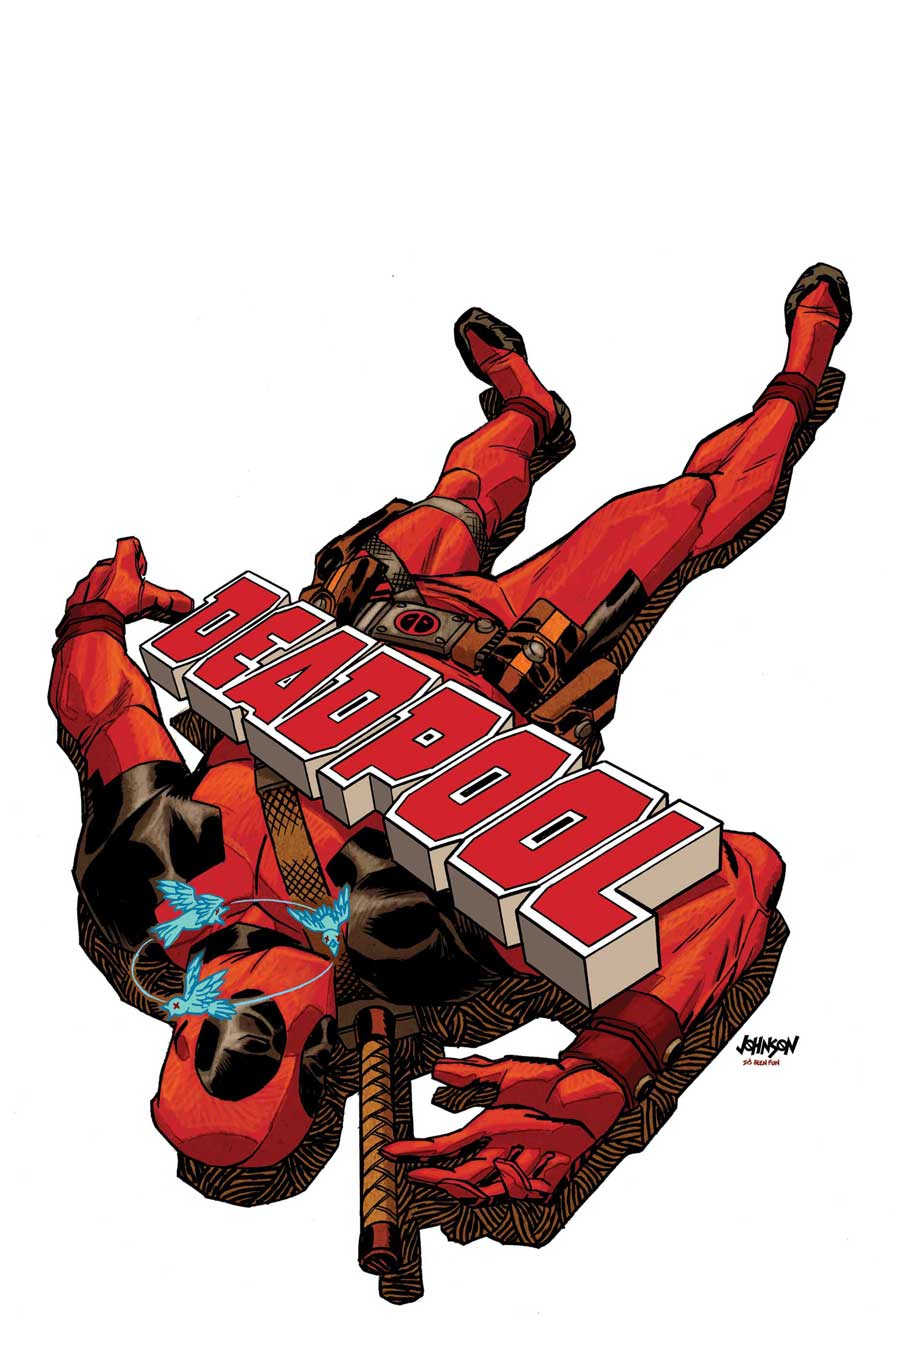 Deadpool #63 by Dave Johnson